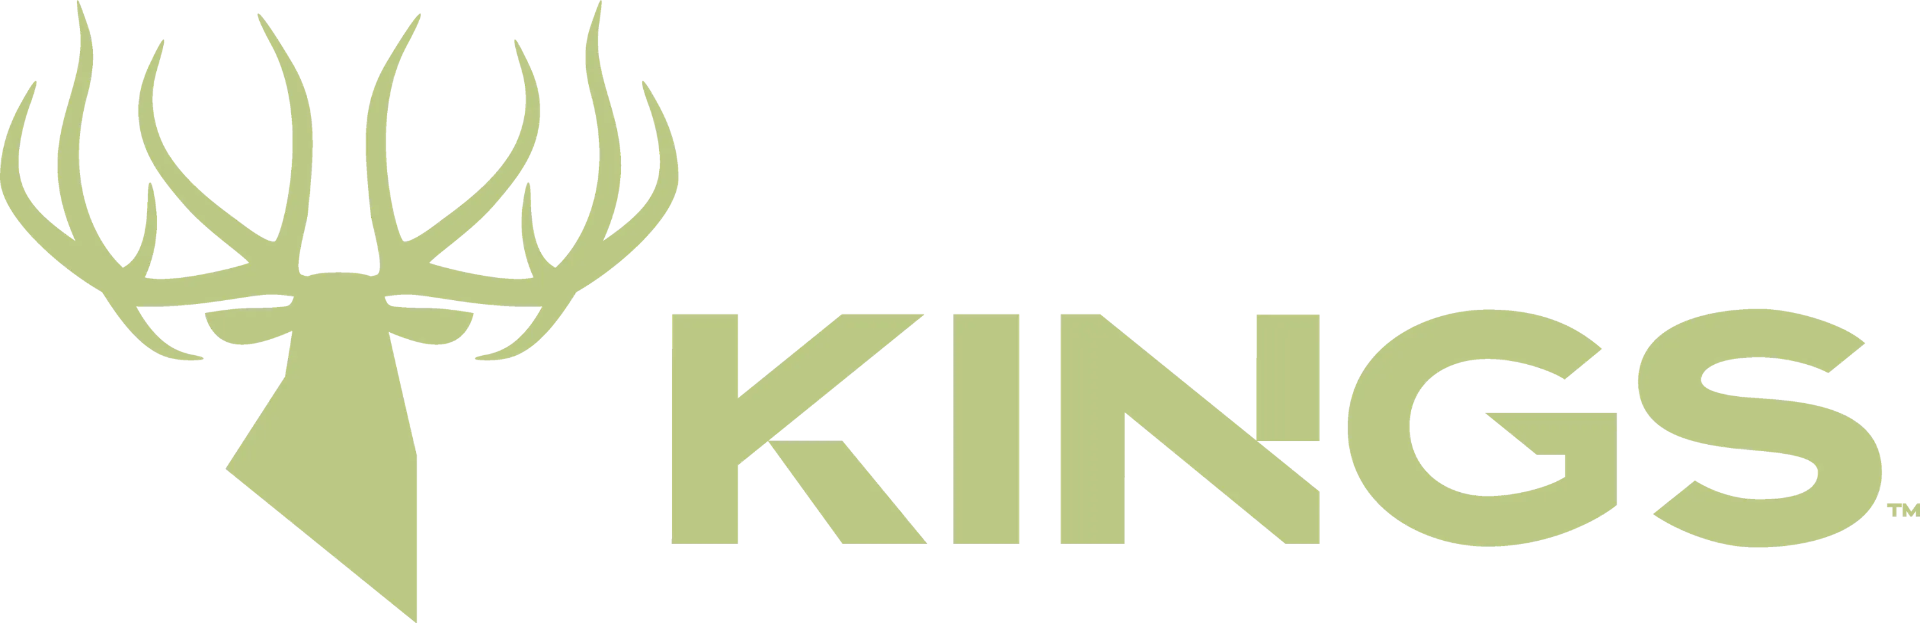 King's camo logo